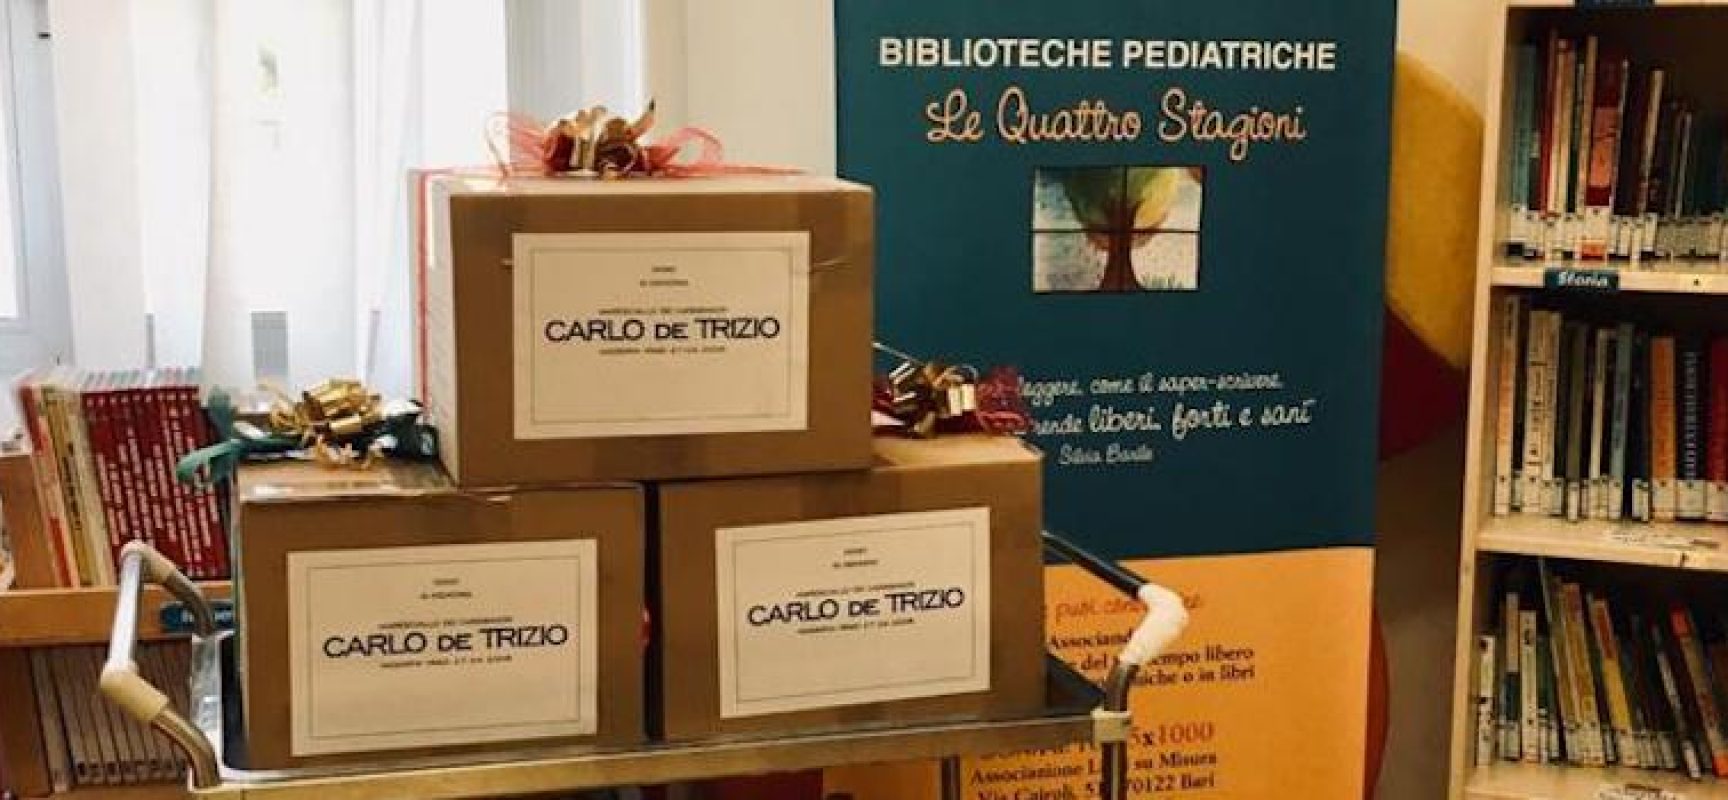 Il comitato Carlo de Trizio dona materiale didattico per bimbi dell’oncologico di Bari